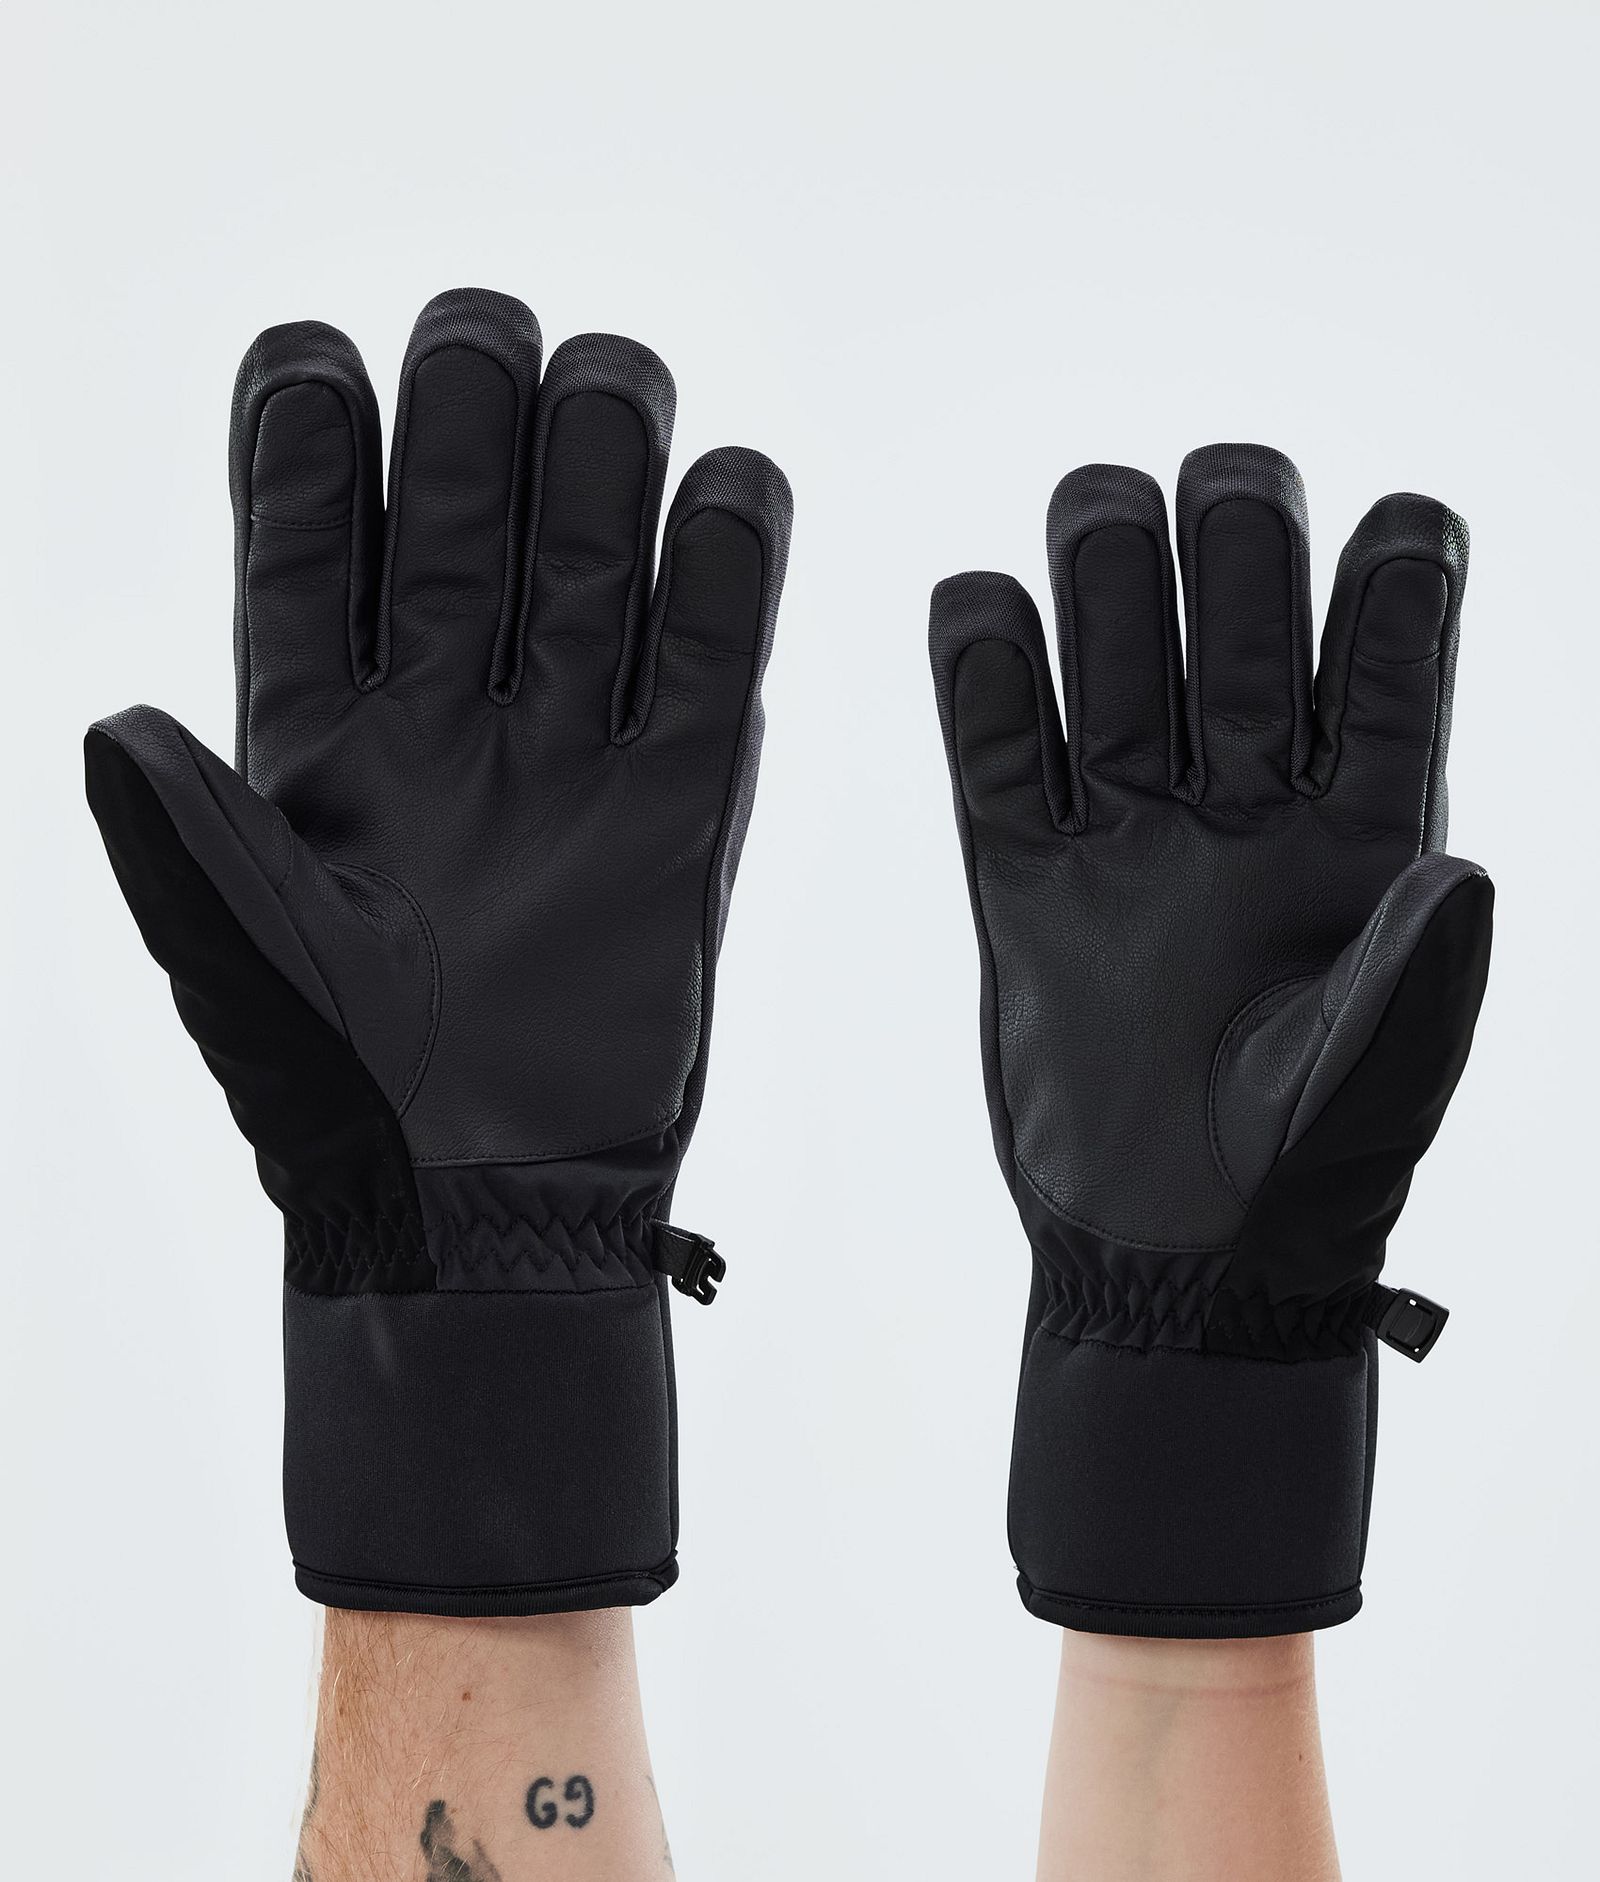 Kilo 2022 Ski Gloves White, Image 2 of 5